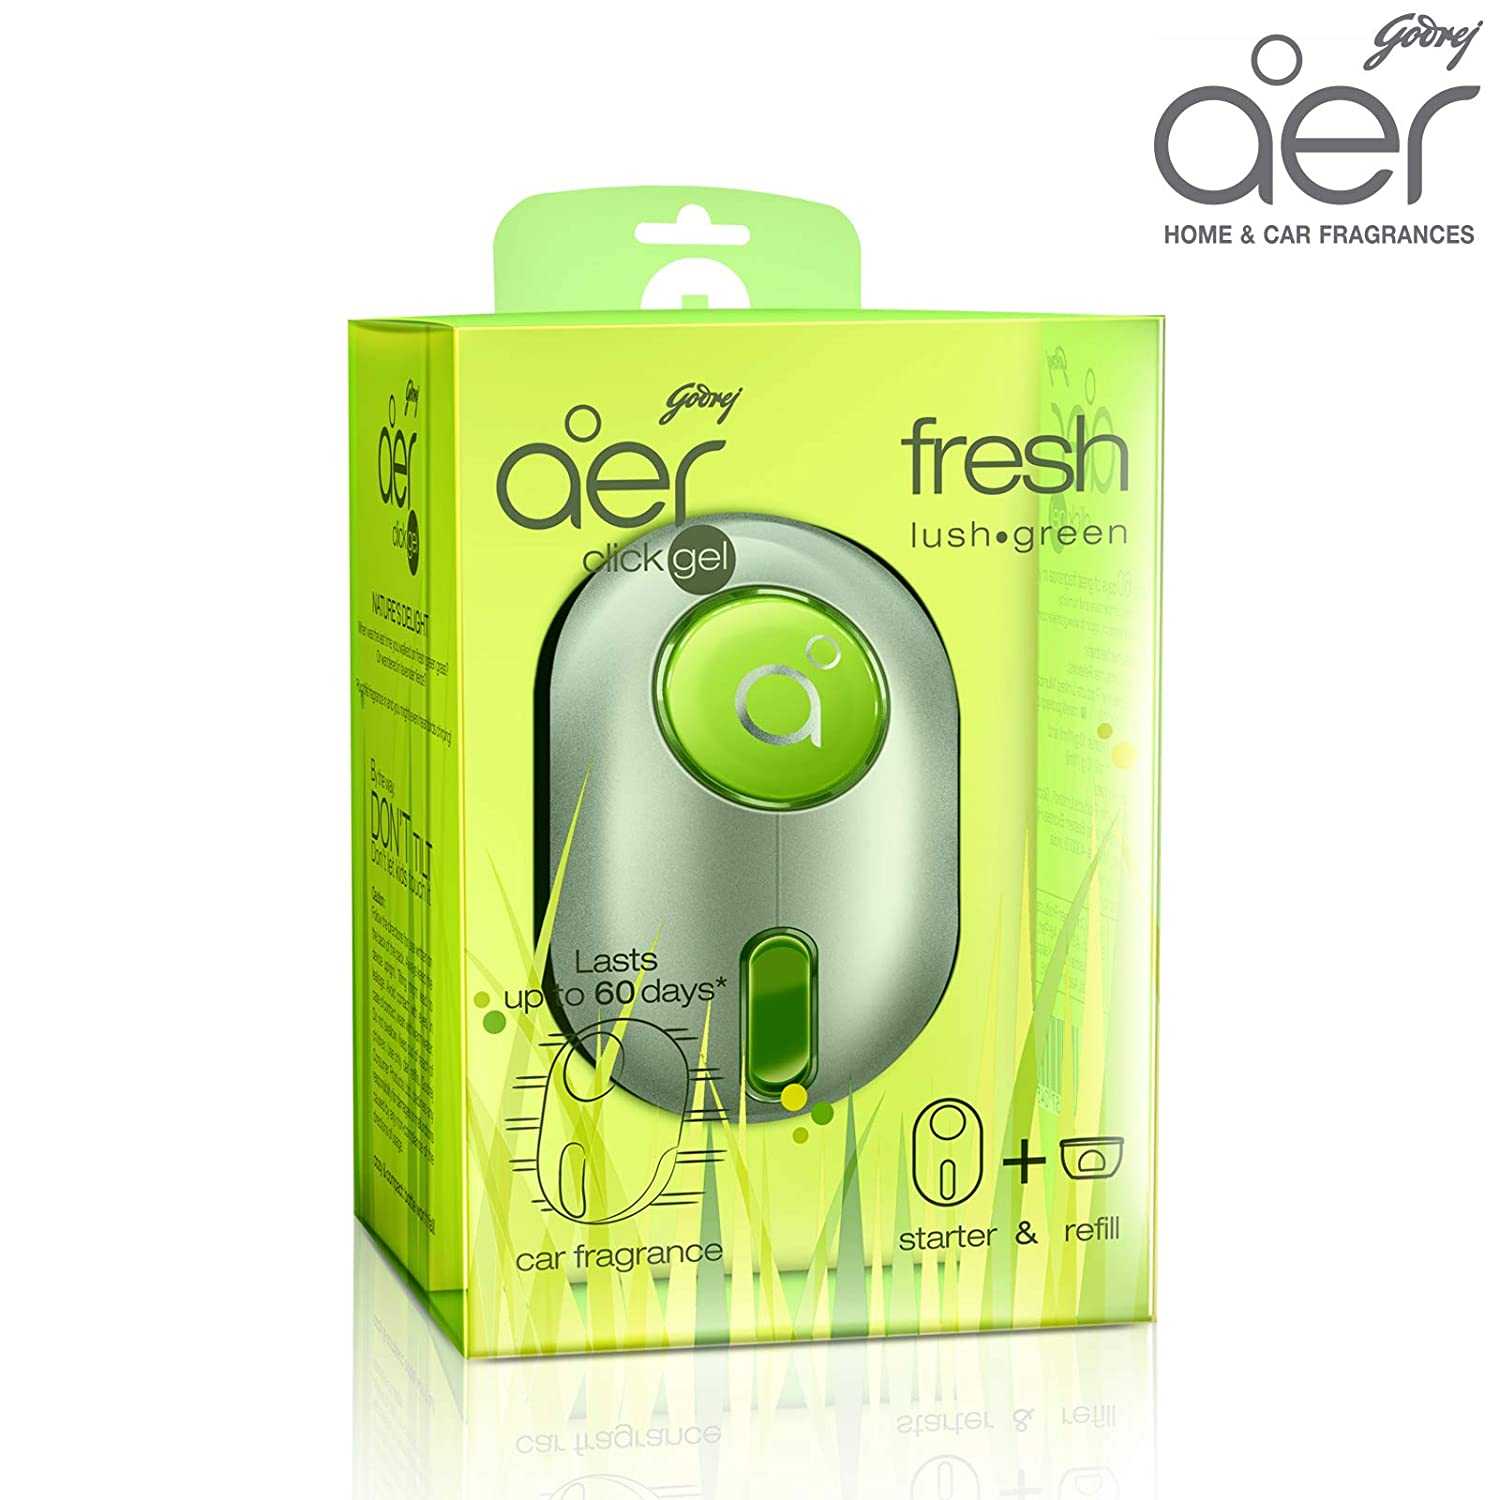 Godrej Aer Click Gel Fresh Lush Green Car Freshener |10 gm